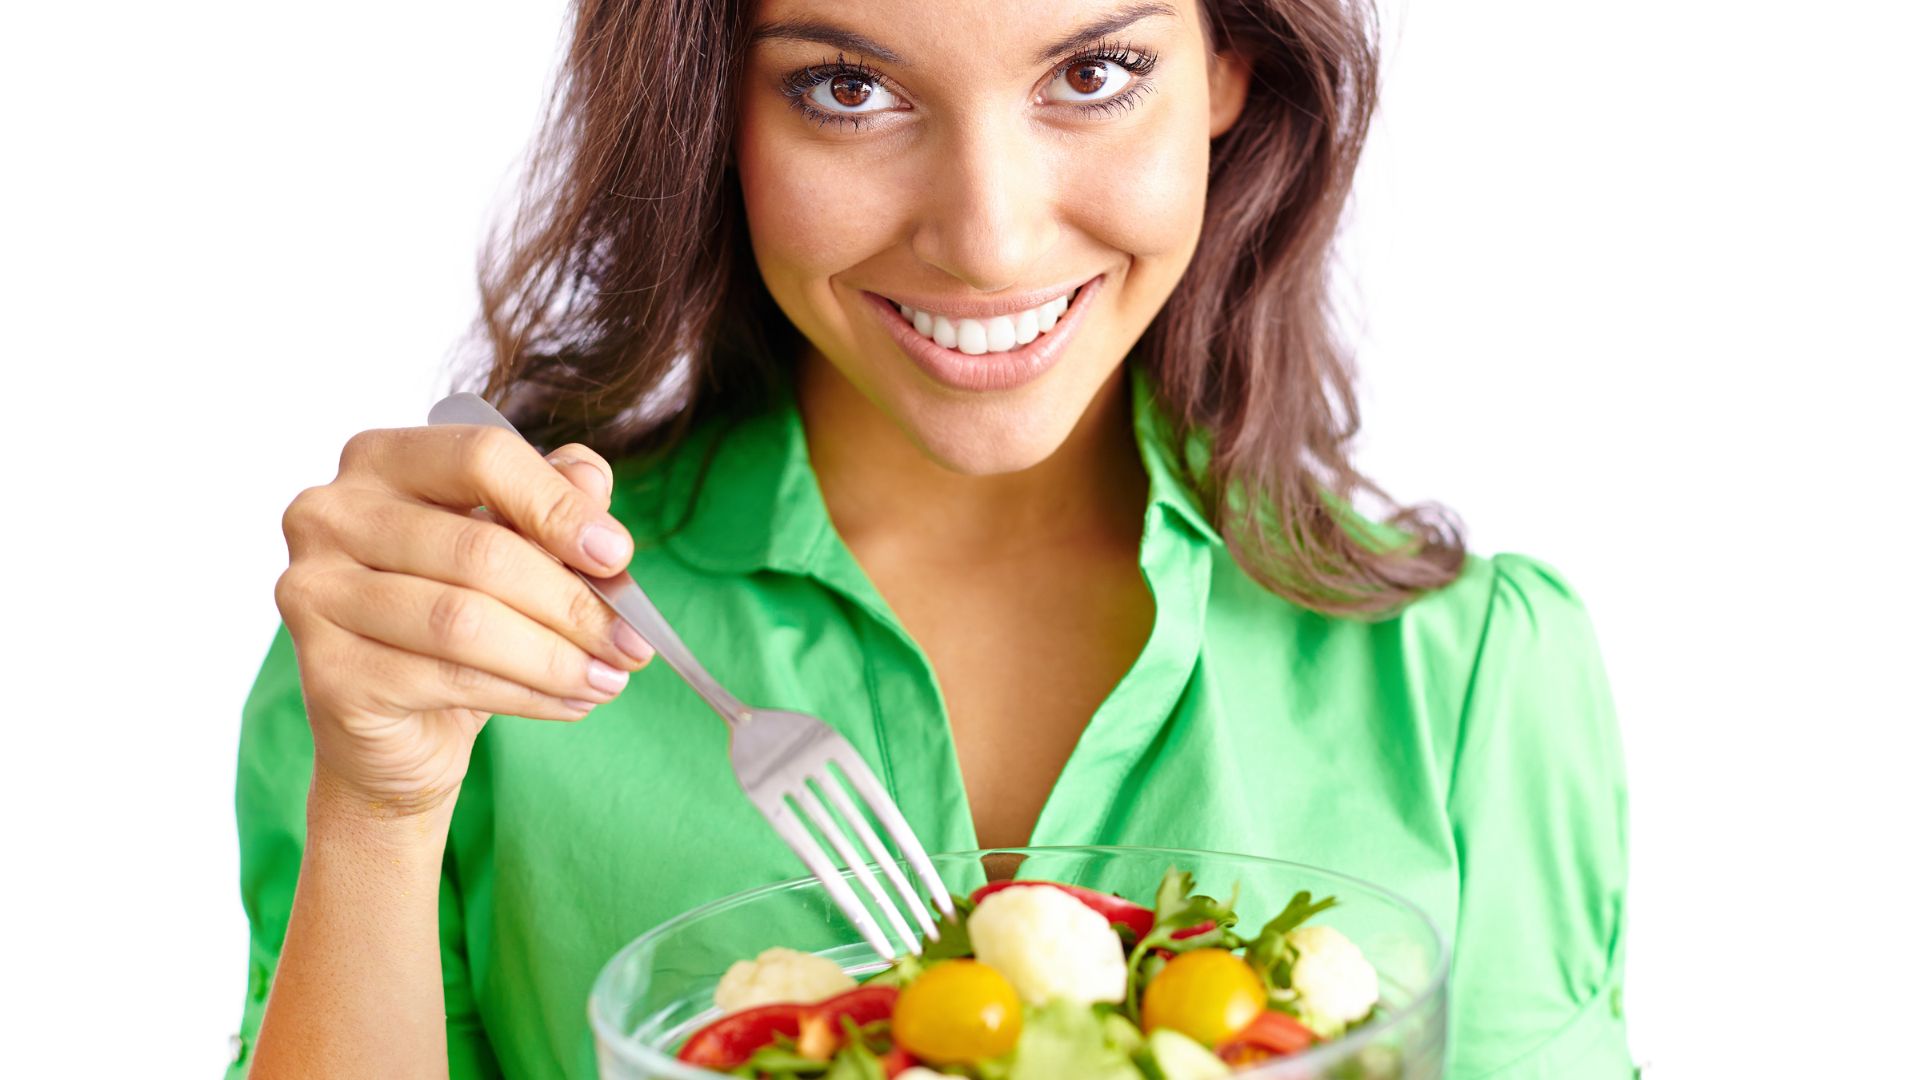 Witaminy dla wegetarian, takich jak kobieta na zdjęciu z zieloną sałatką, trudno otrzymać z naturalnych produktów.